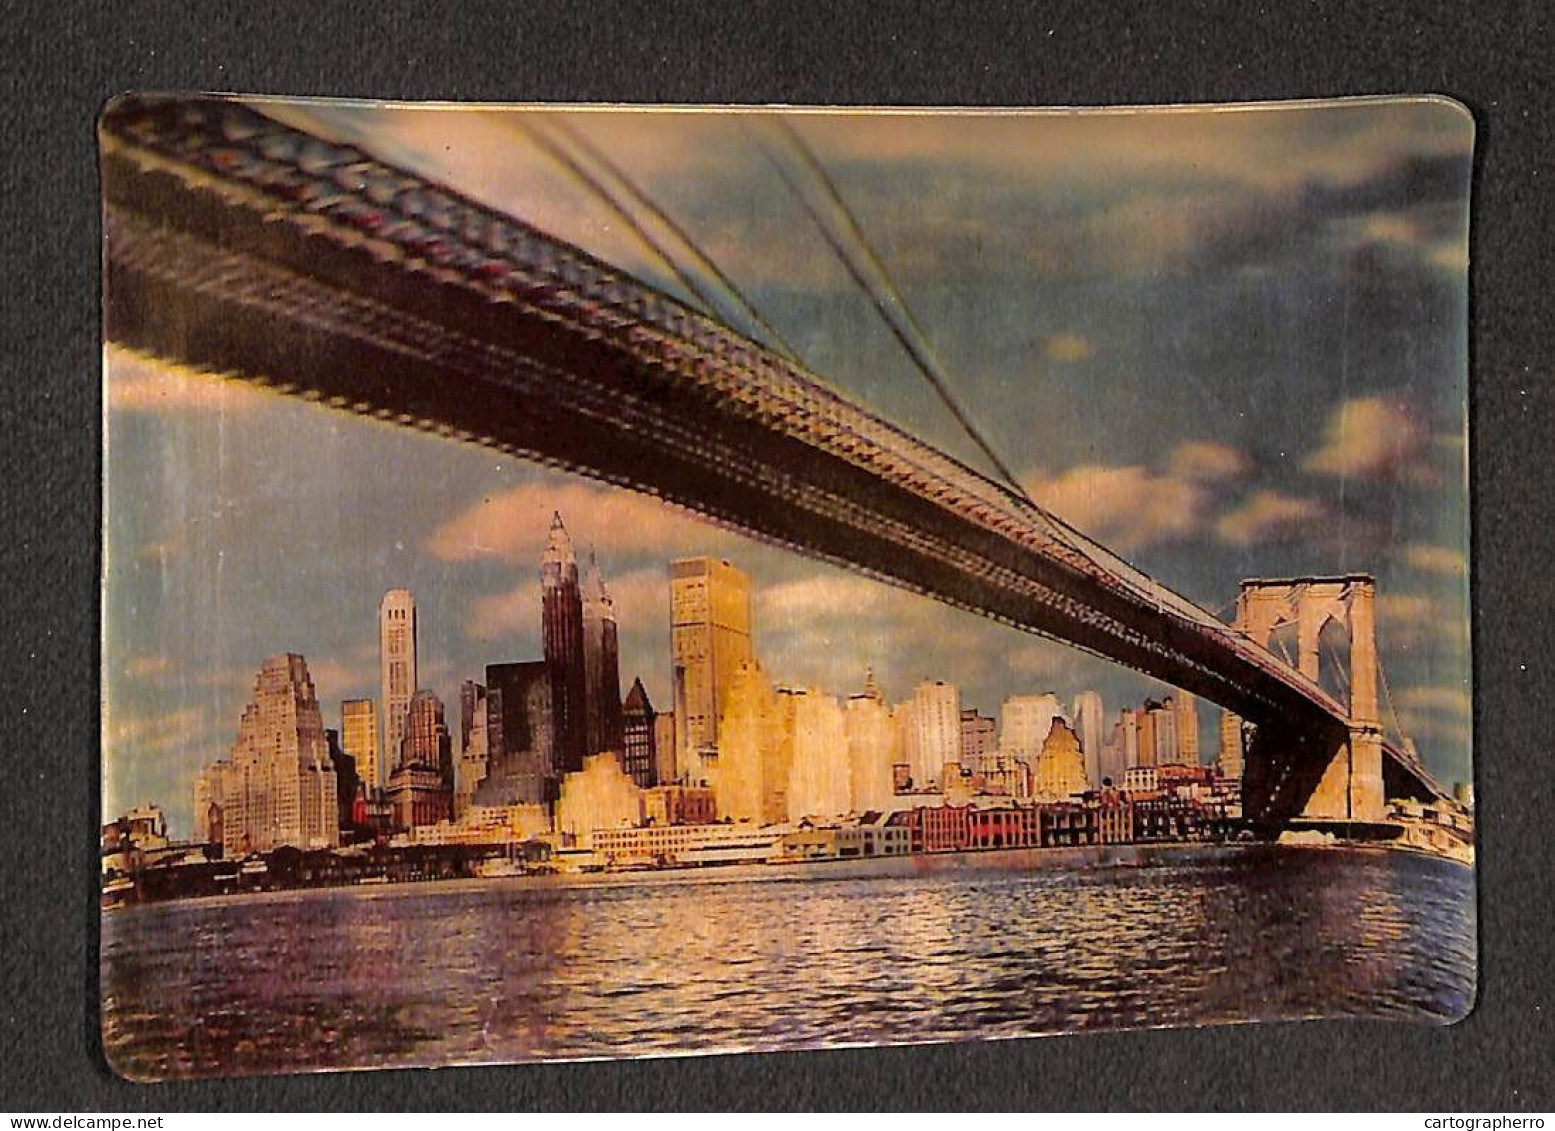 United States New York Brooklyn Bridge Lenticular Stereo 3D Postcard Format 11 X 16 Cm - Puentes Y Túneles